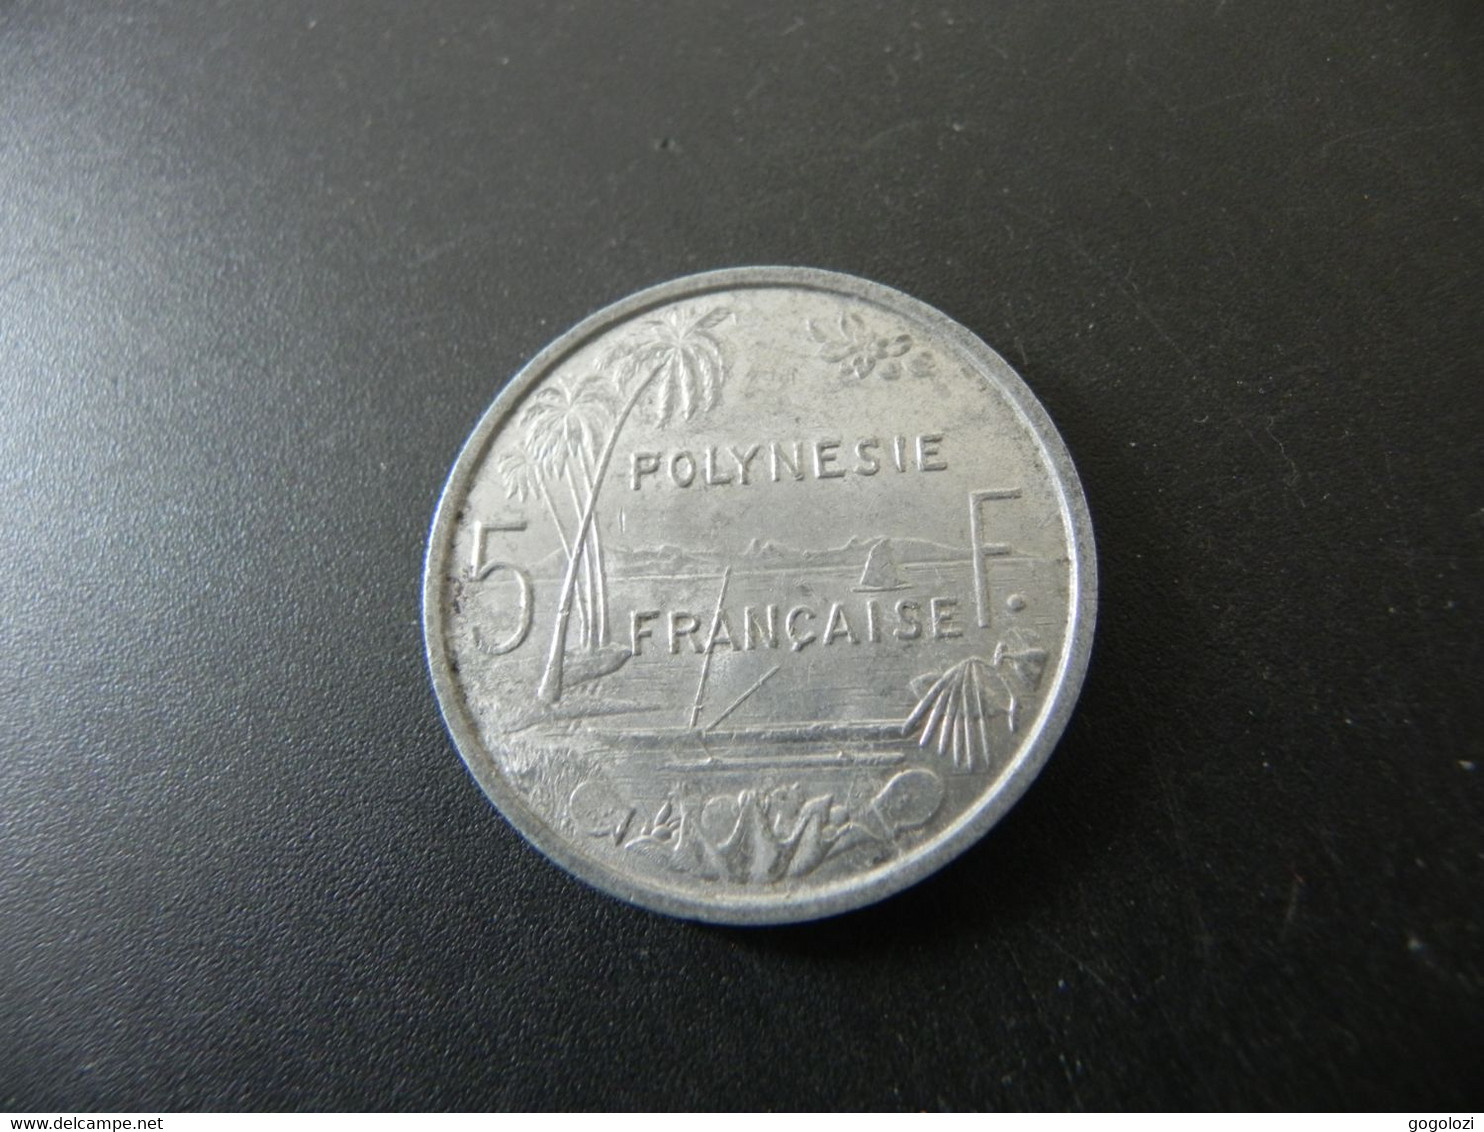 Polynesie Française 5 Francs 1975 - Frans-Polynesië